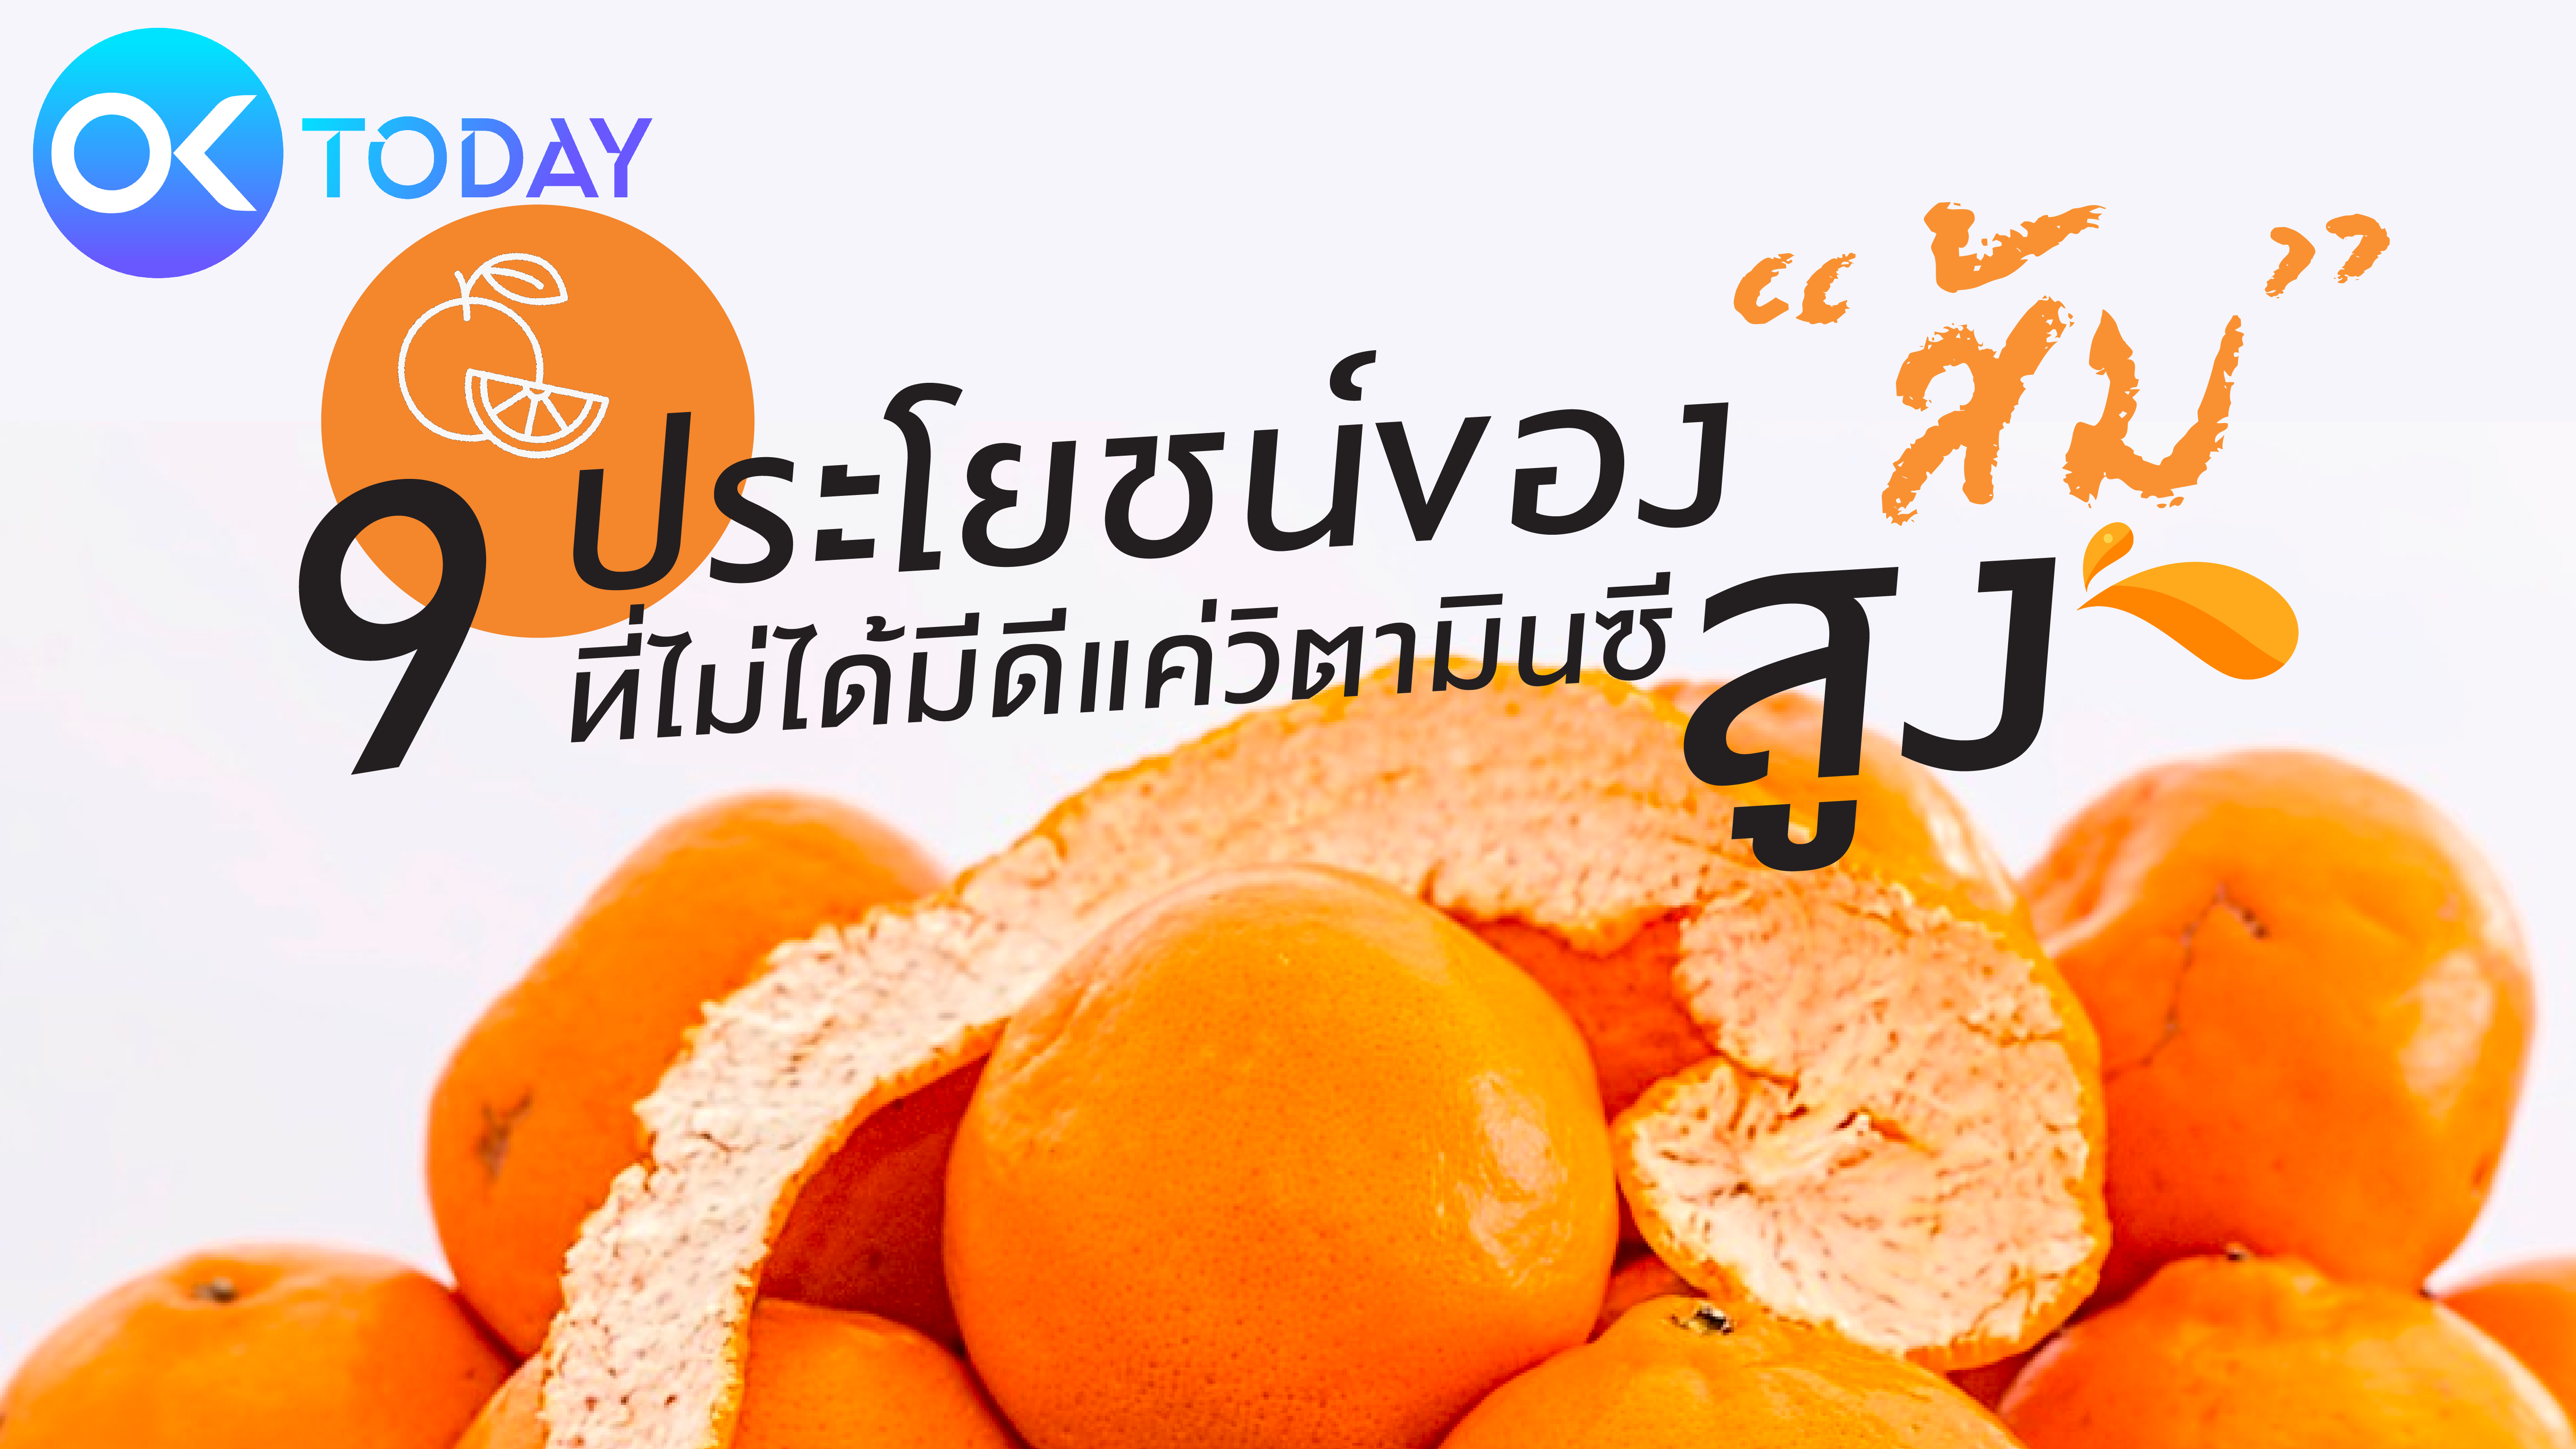 9 ประโยชน์ของ “ส้ม” ที่ไม่ได้มีดีแค่วิตามินซีสูง 